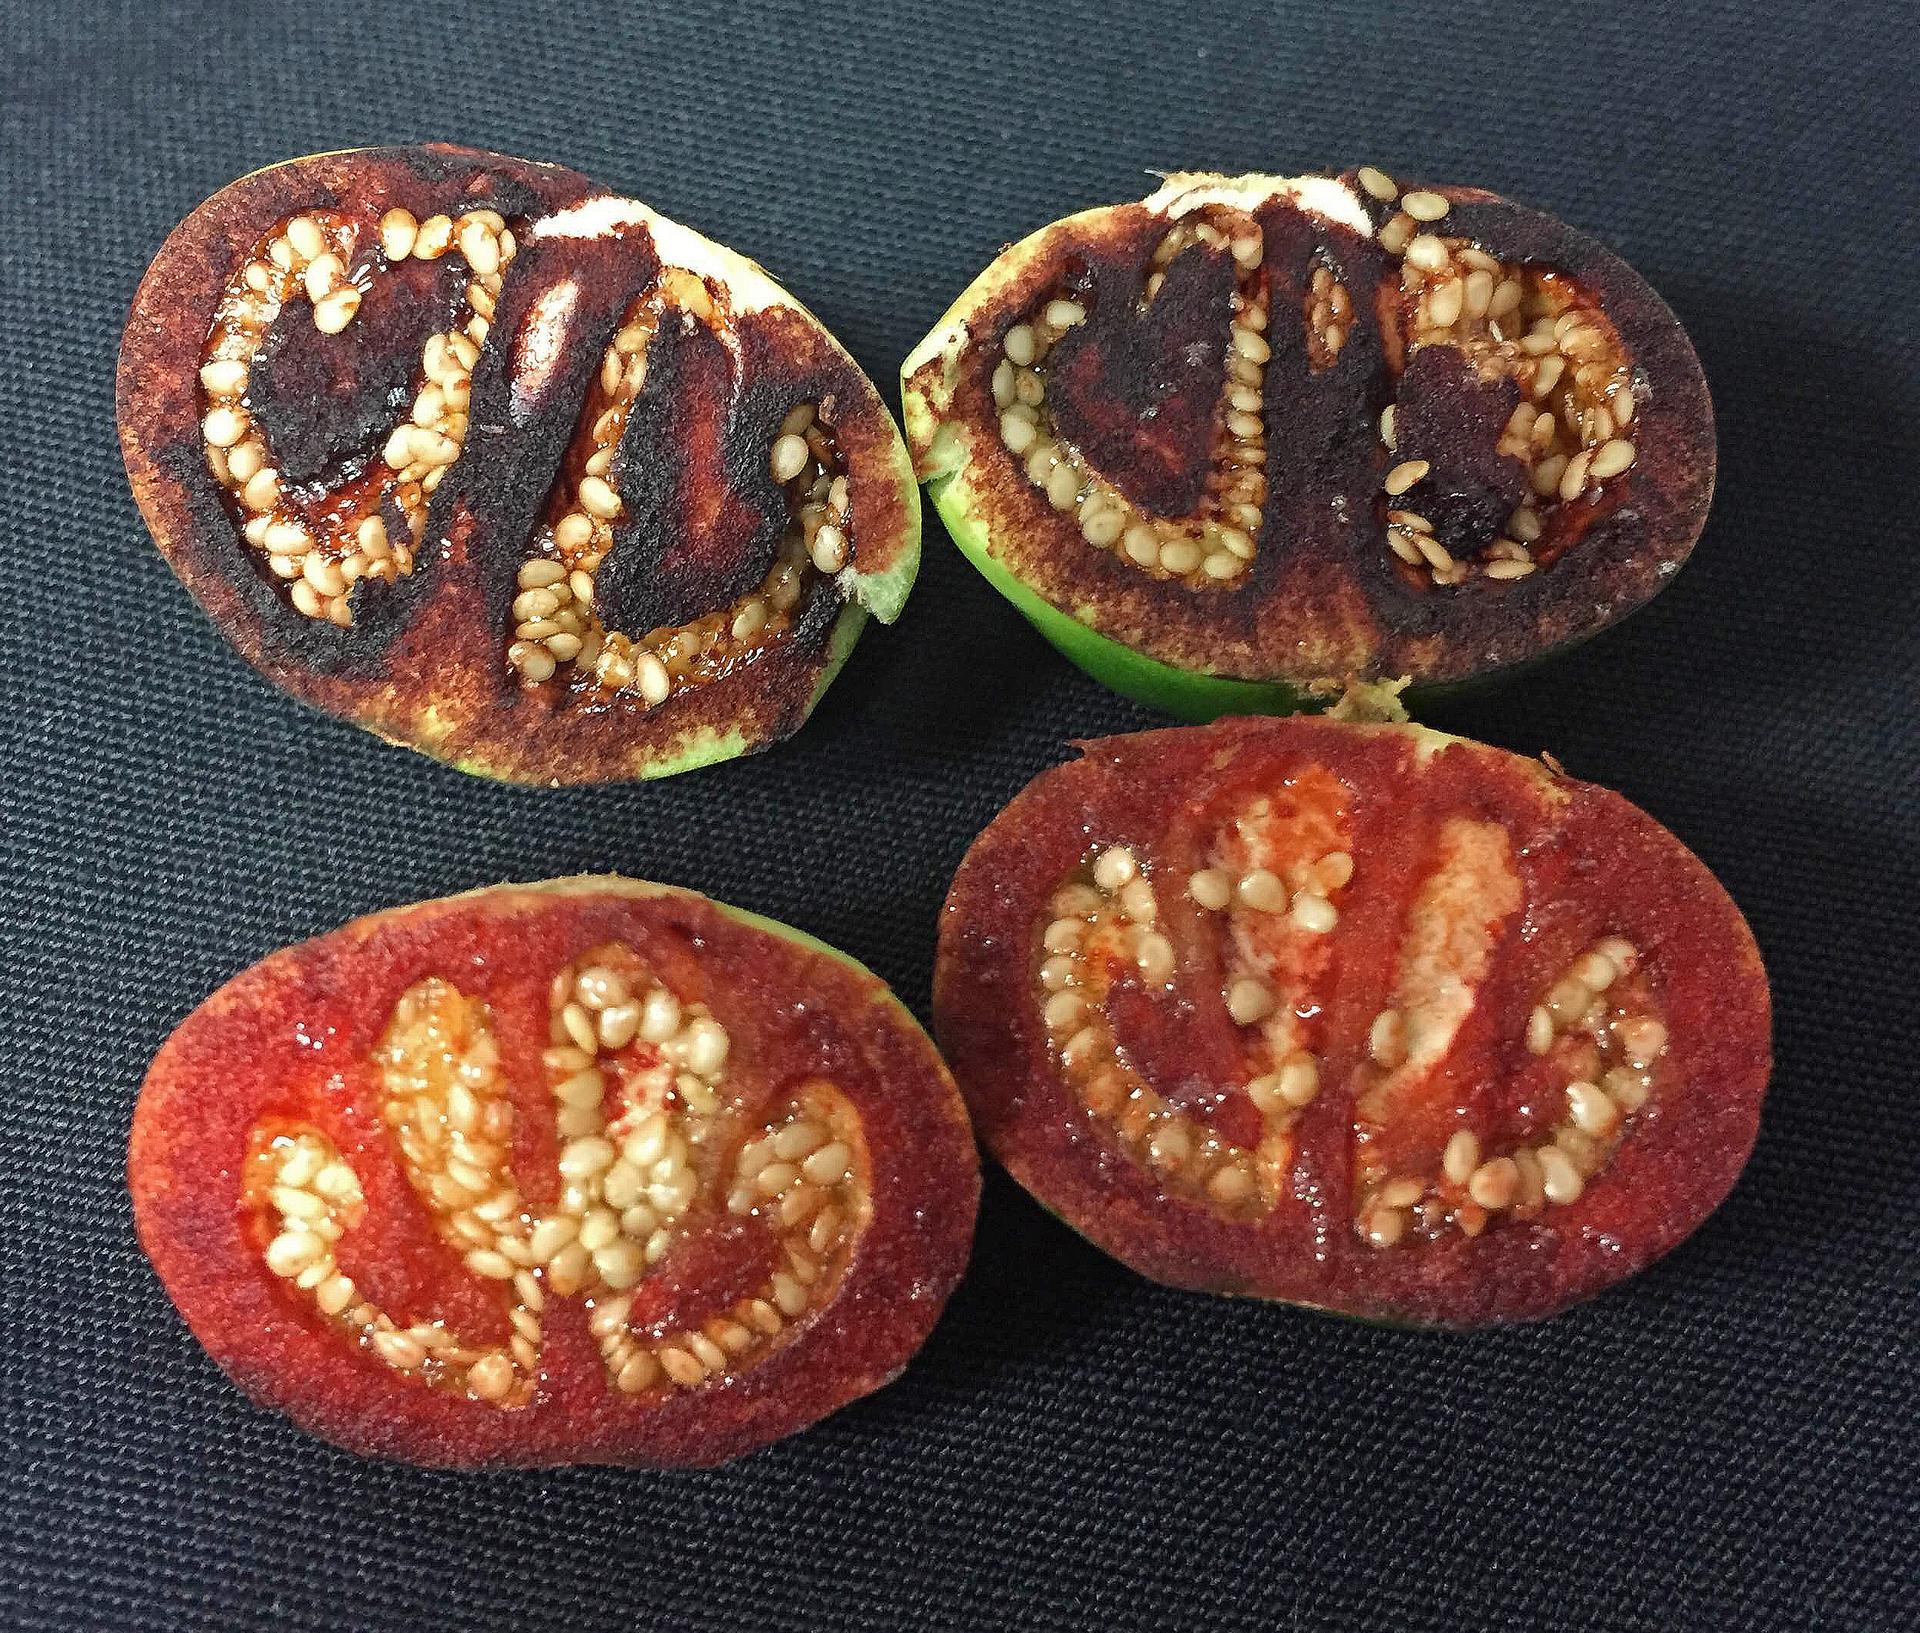 unripened fruits of Solanum ossicruentum